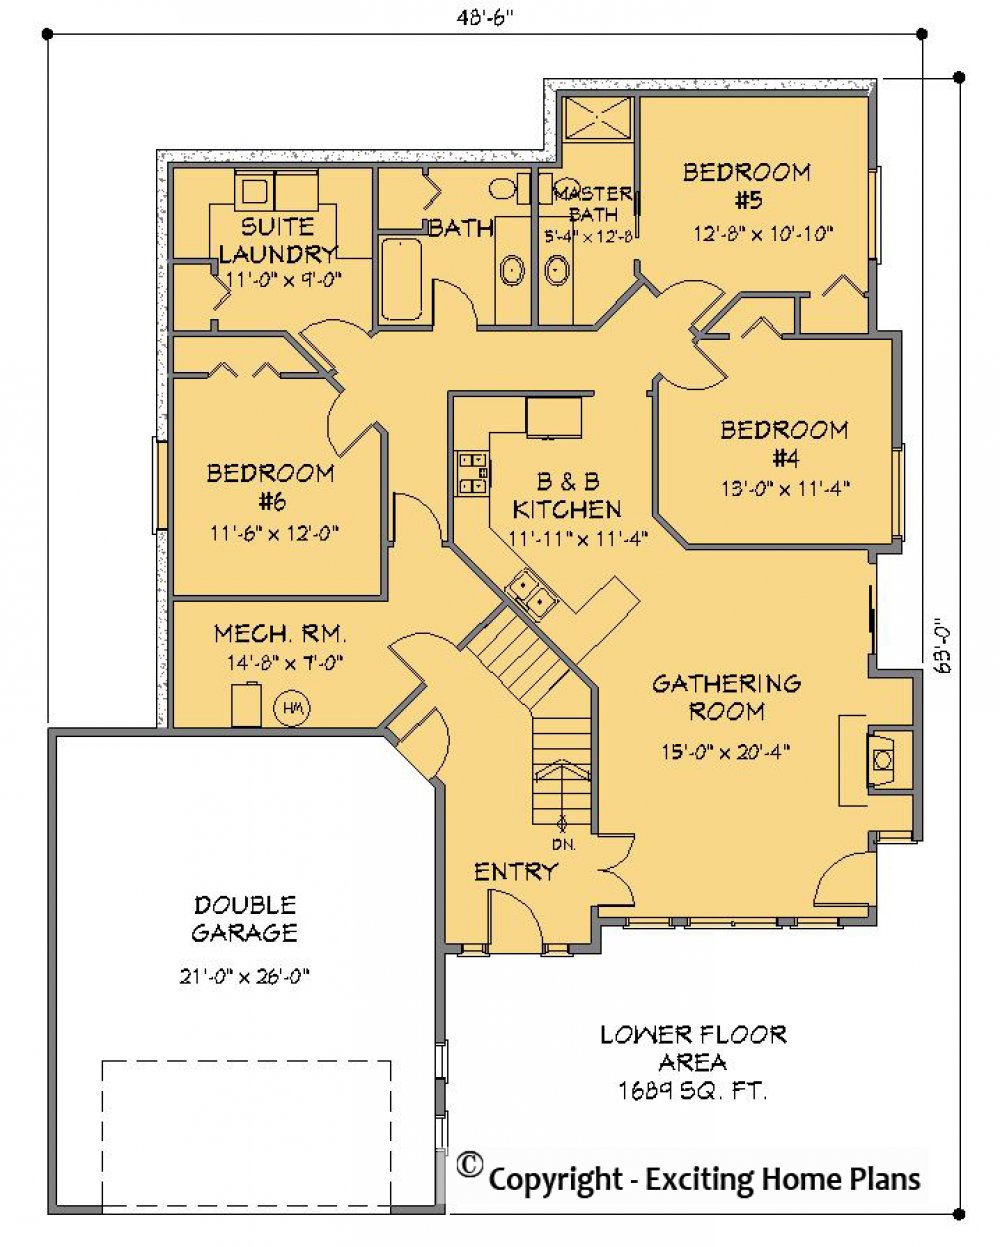 House Plan E1270-10  Lower Floor Plan